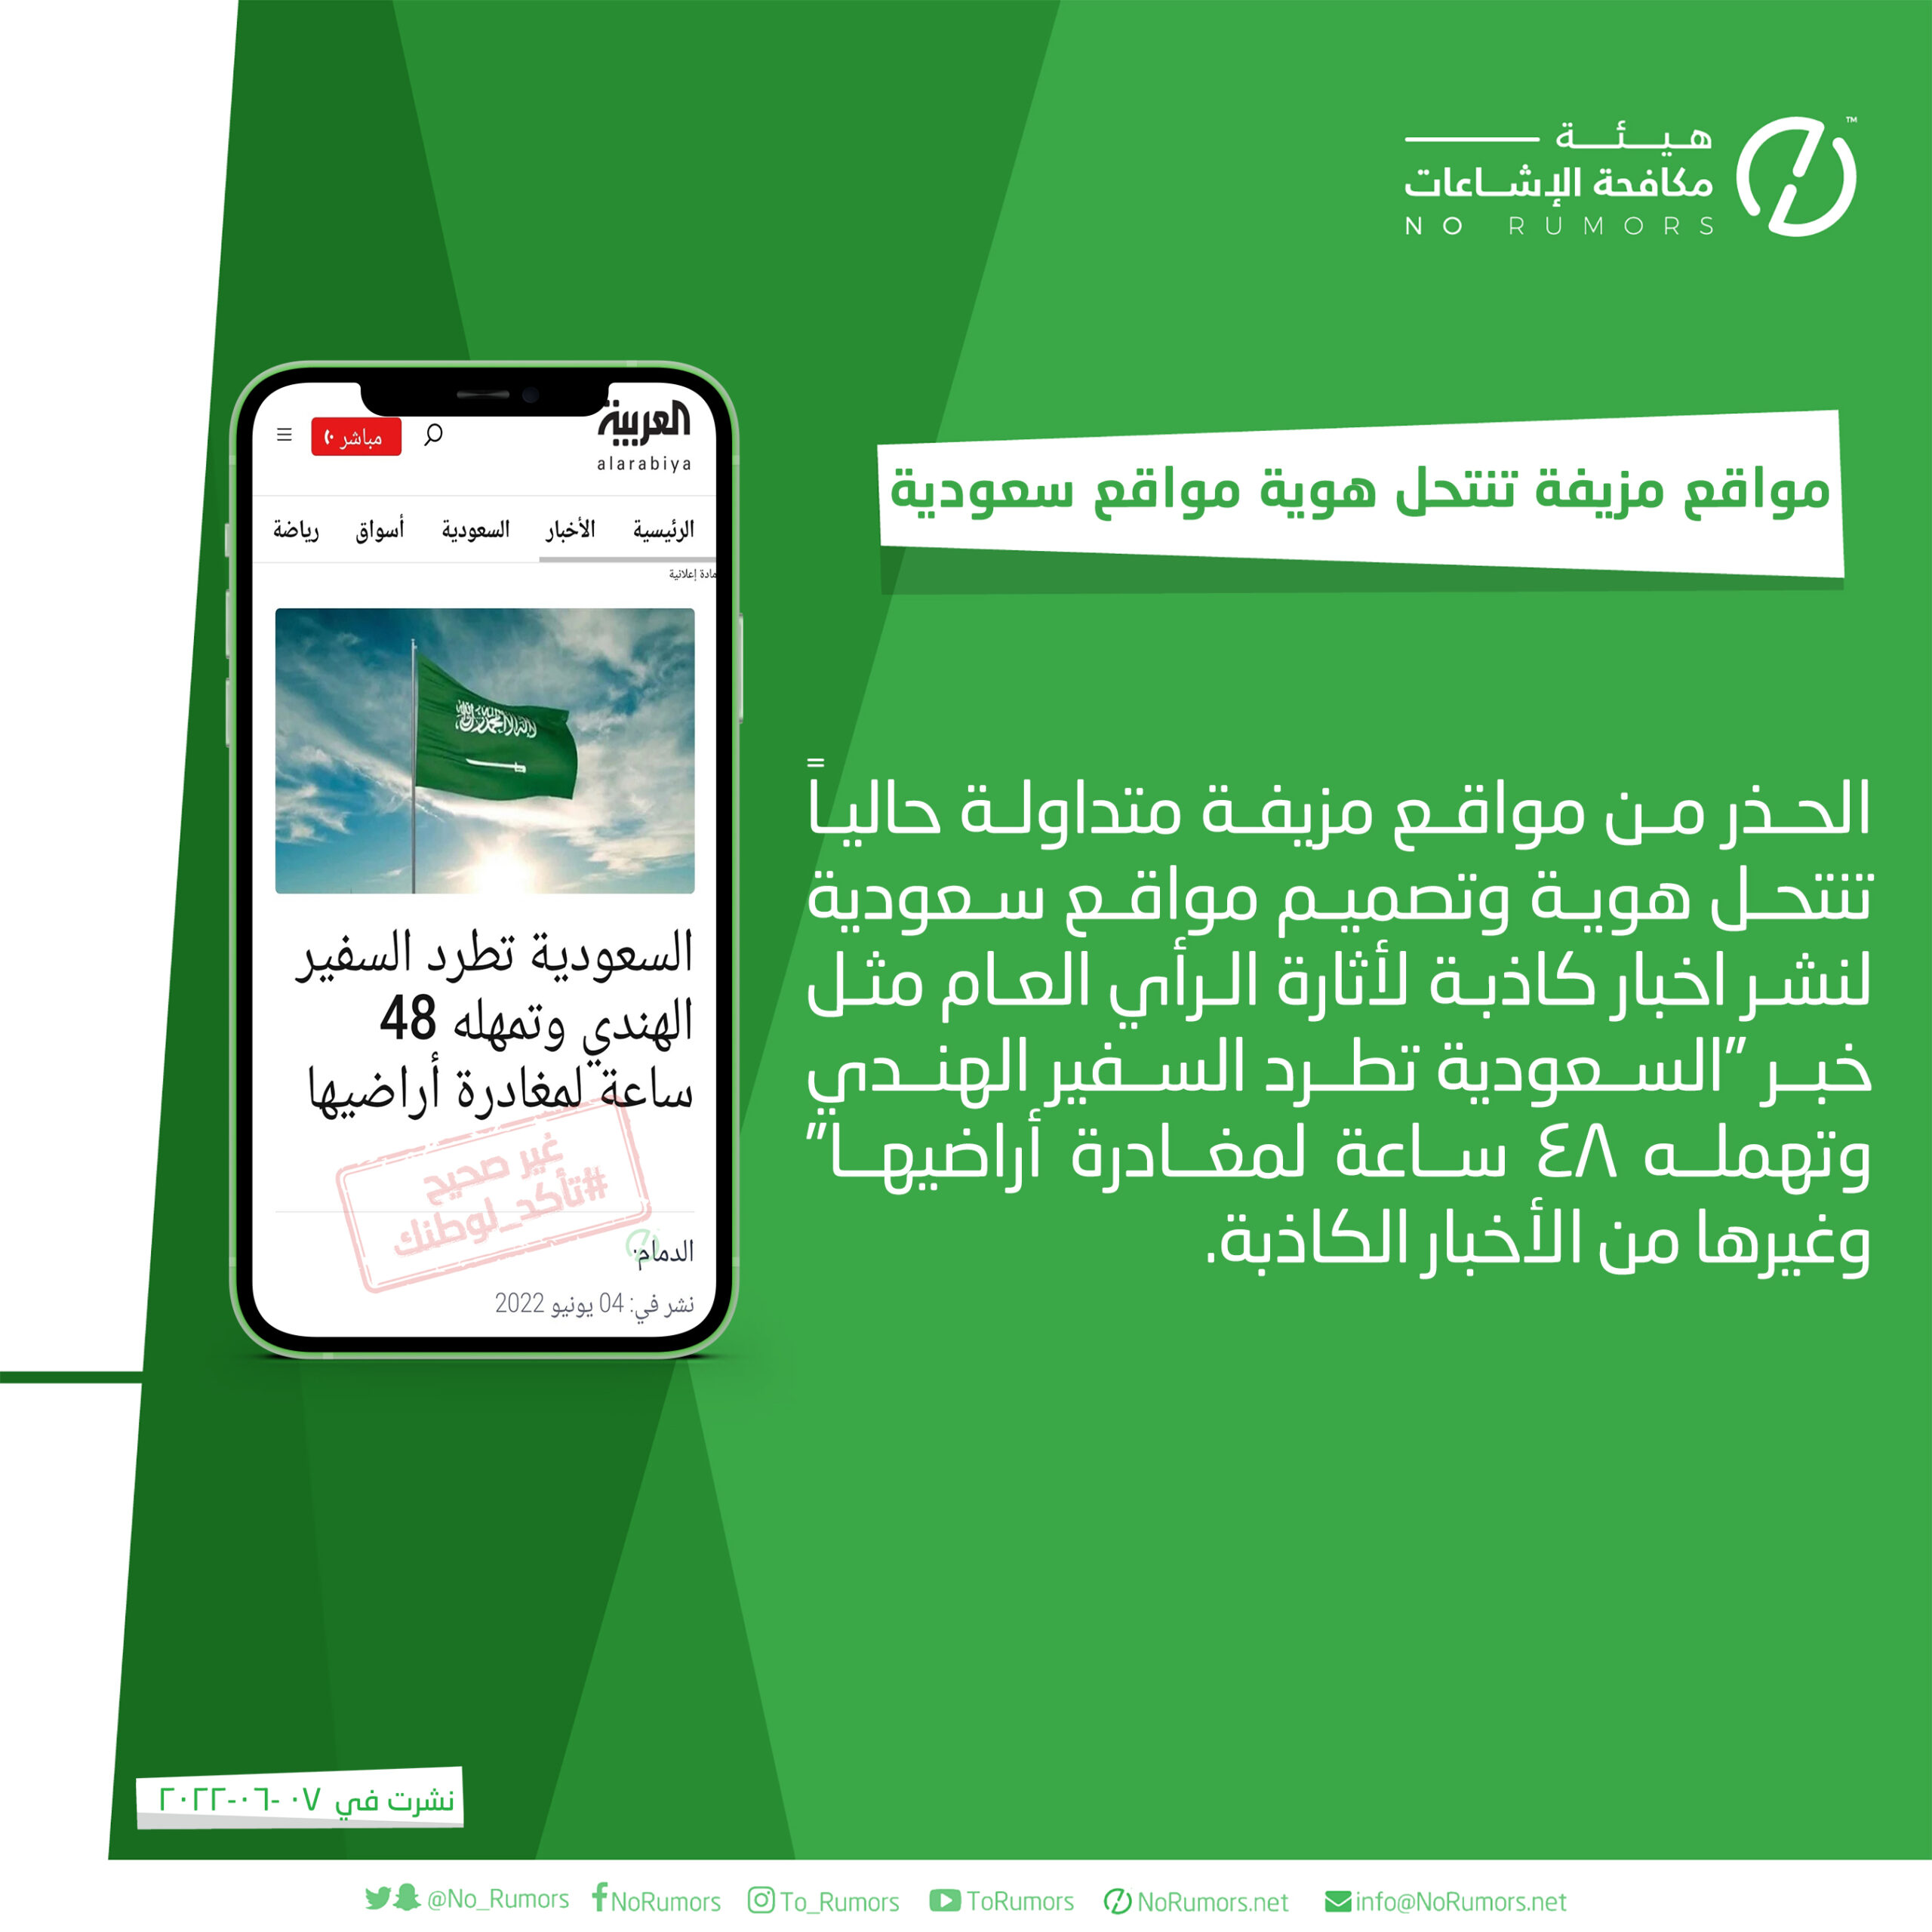 مواقع مزيفة متداولة حالياً تنتحل هوية وتصميم مواقع سعودية لنشر اخبار كاذبة لأثارة الرأي العام